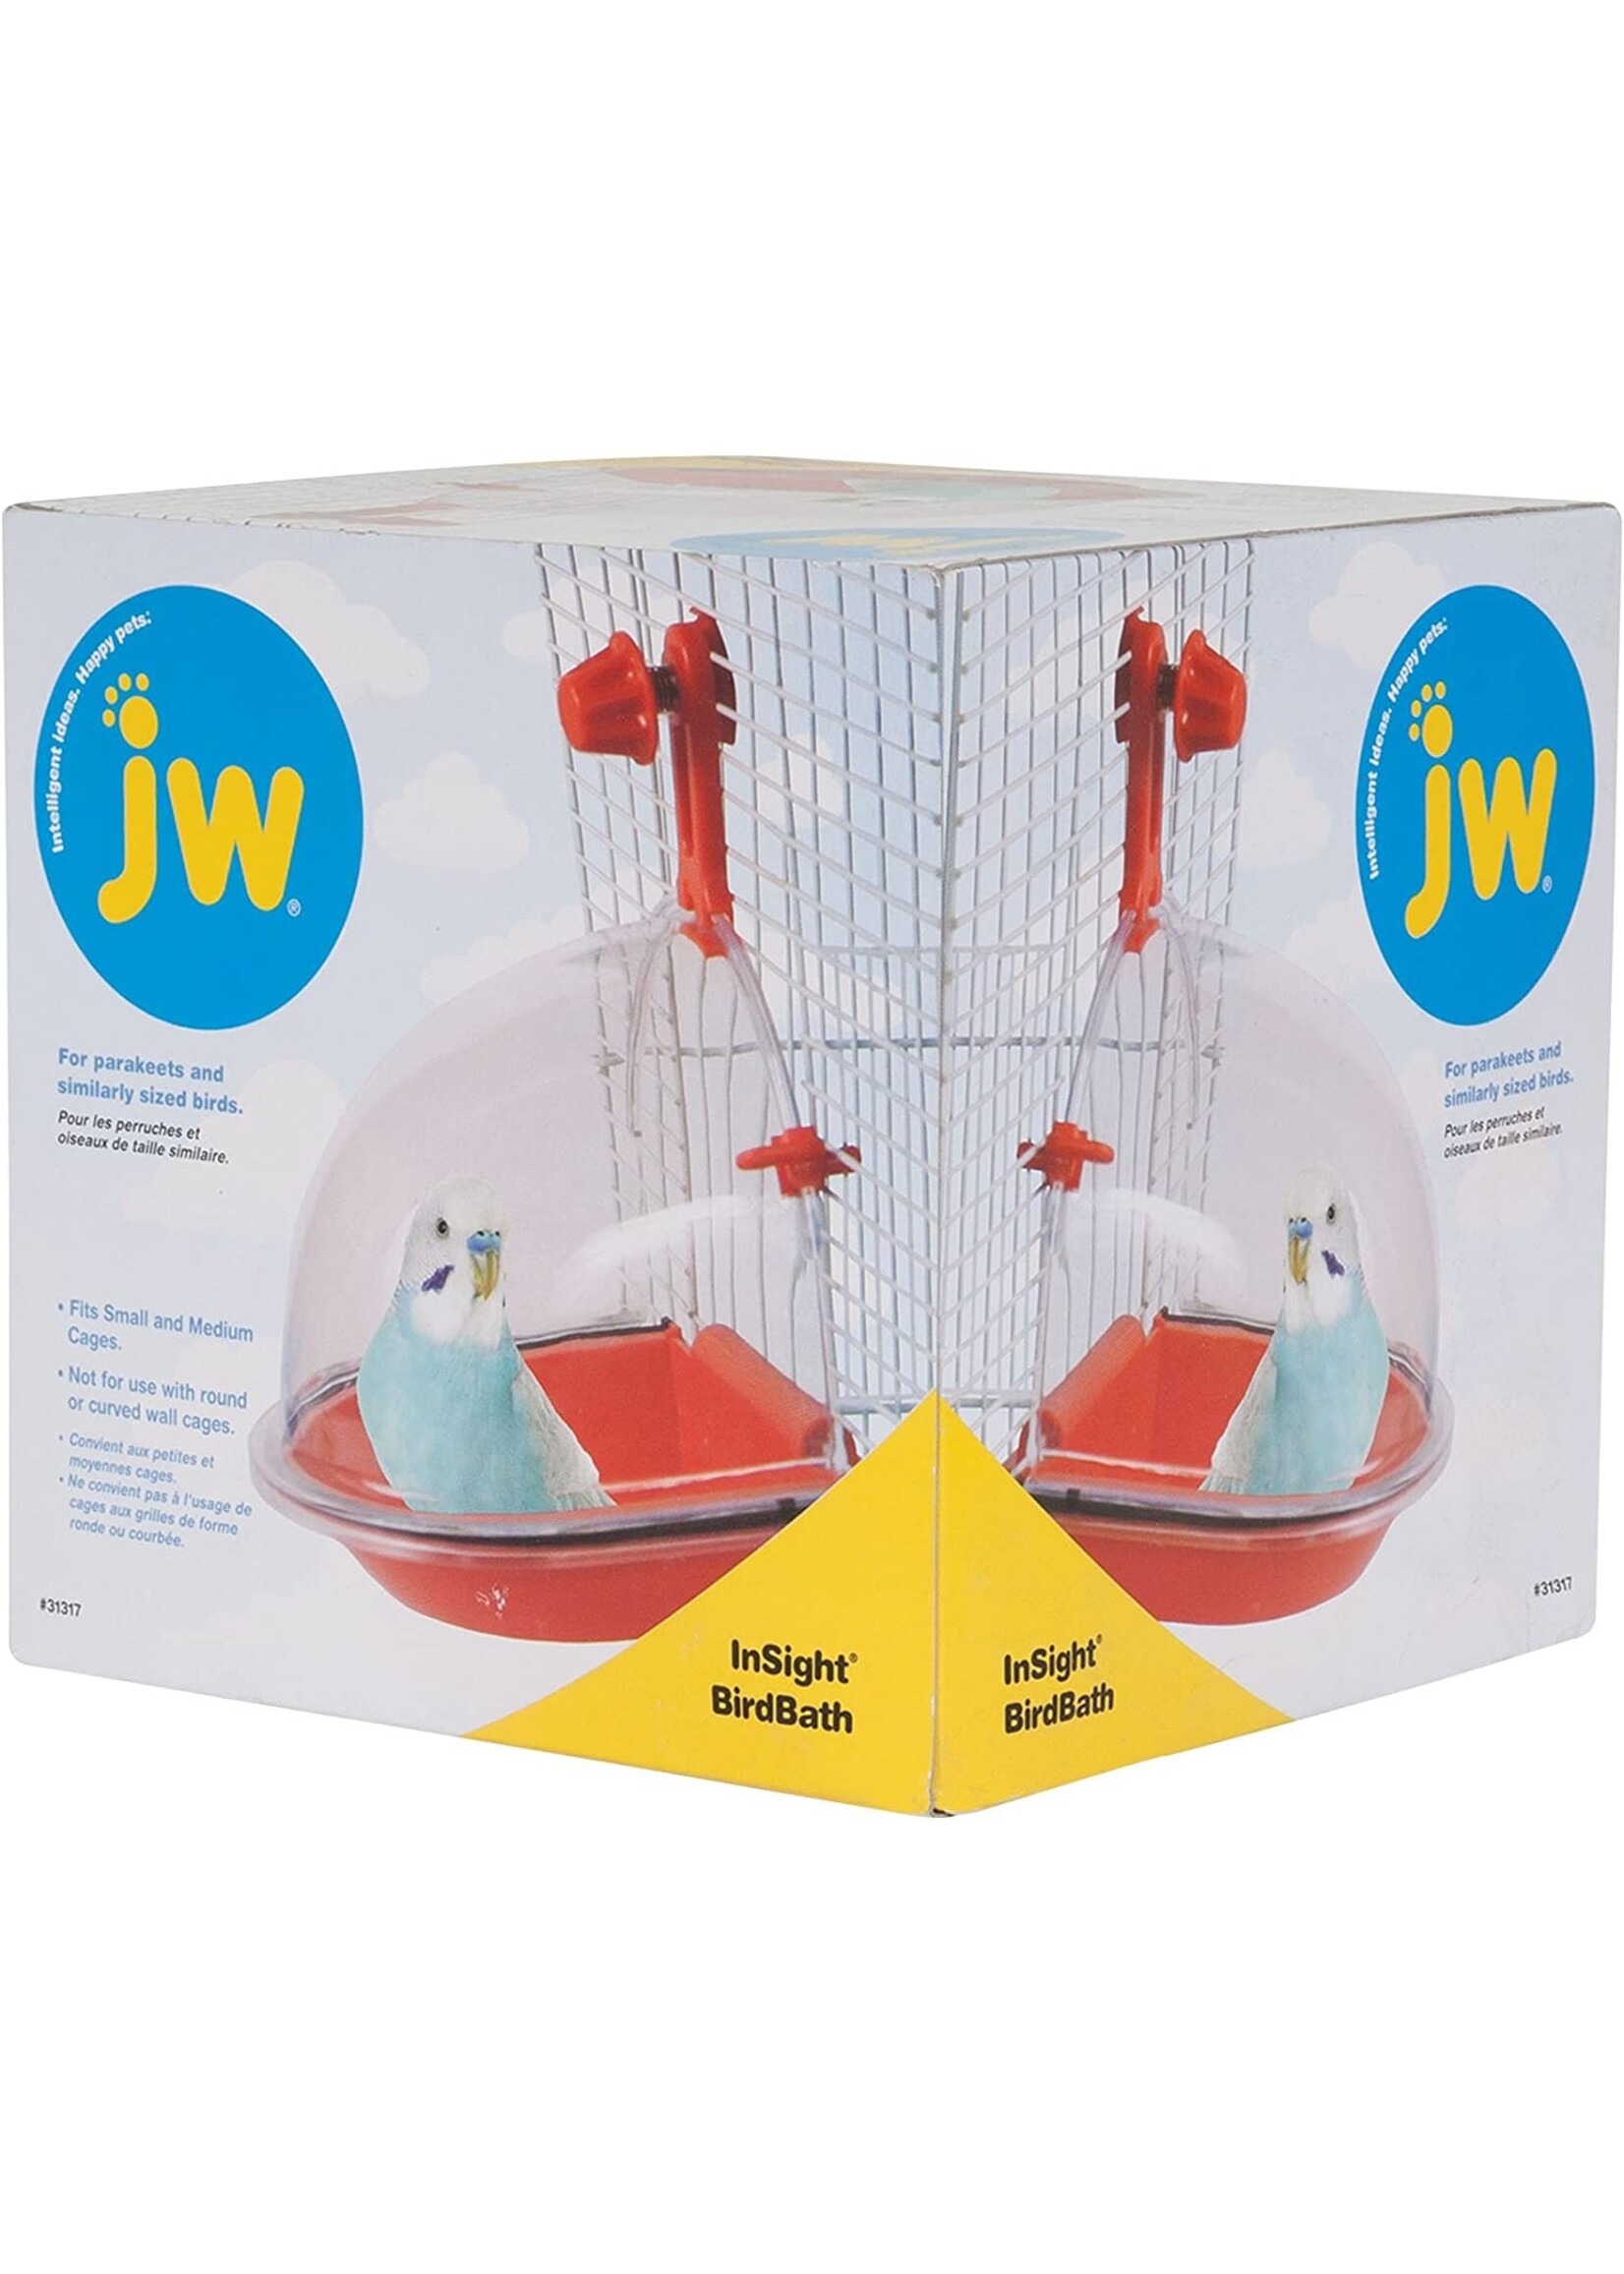 J.W. PET COMPANY JW / Insight - Bird Bath